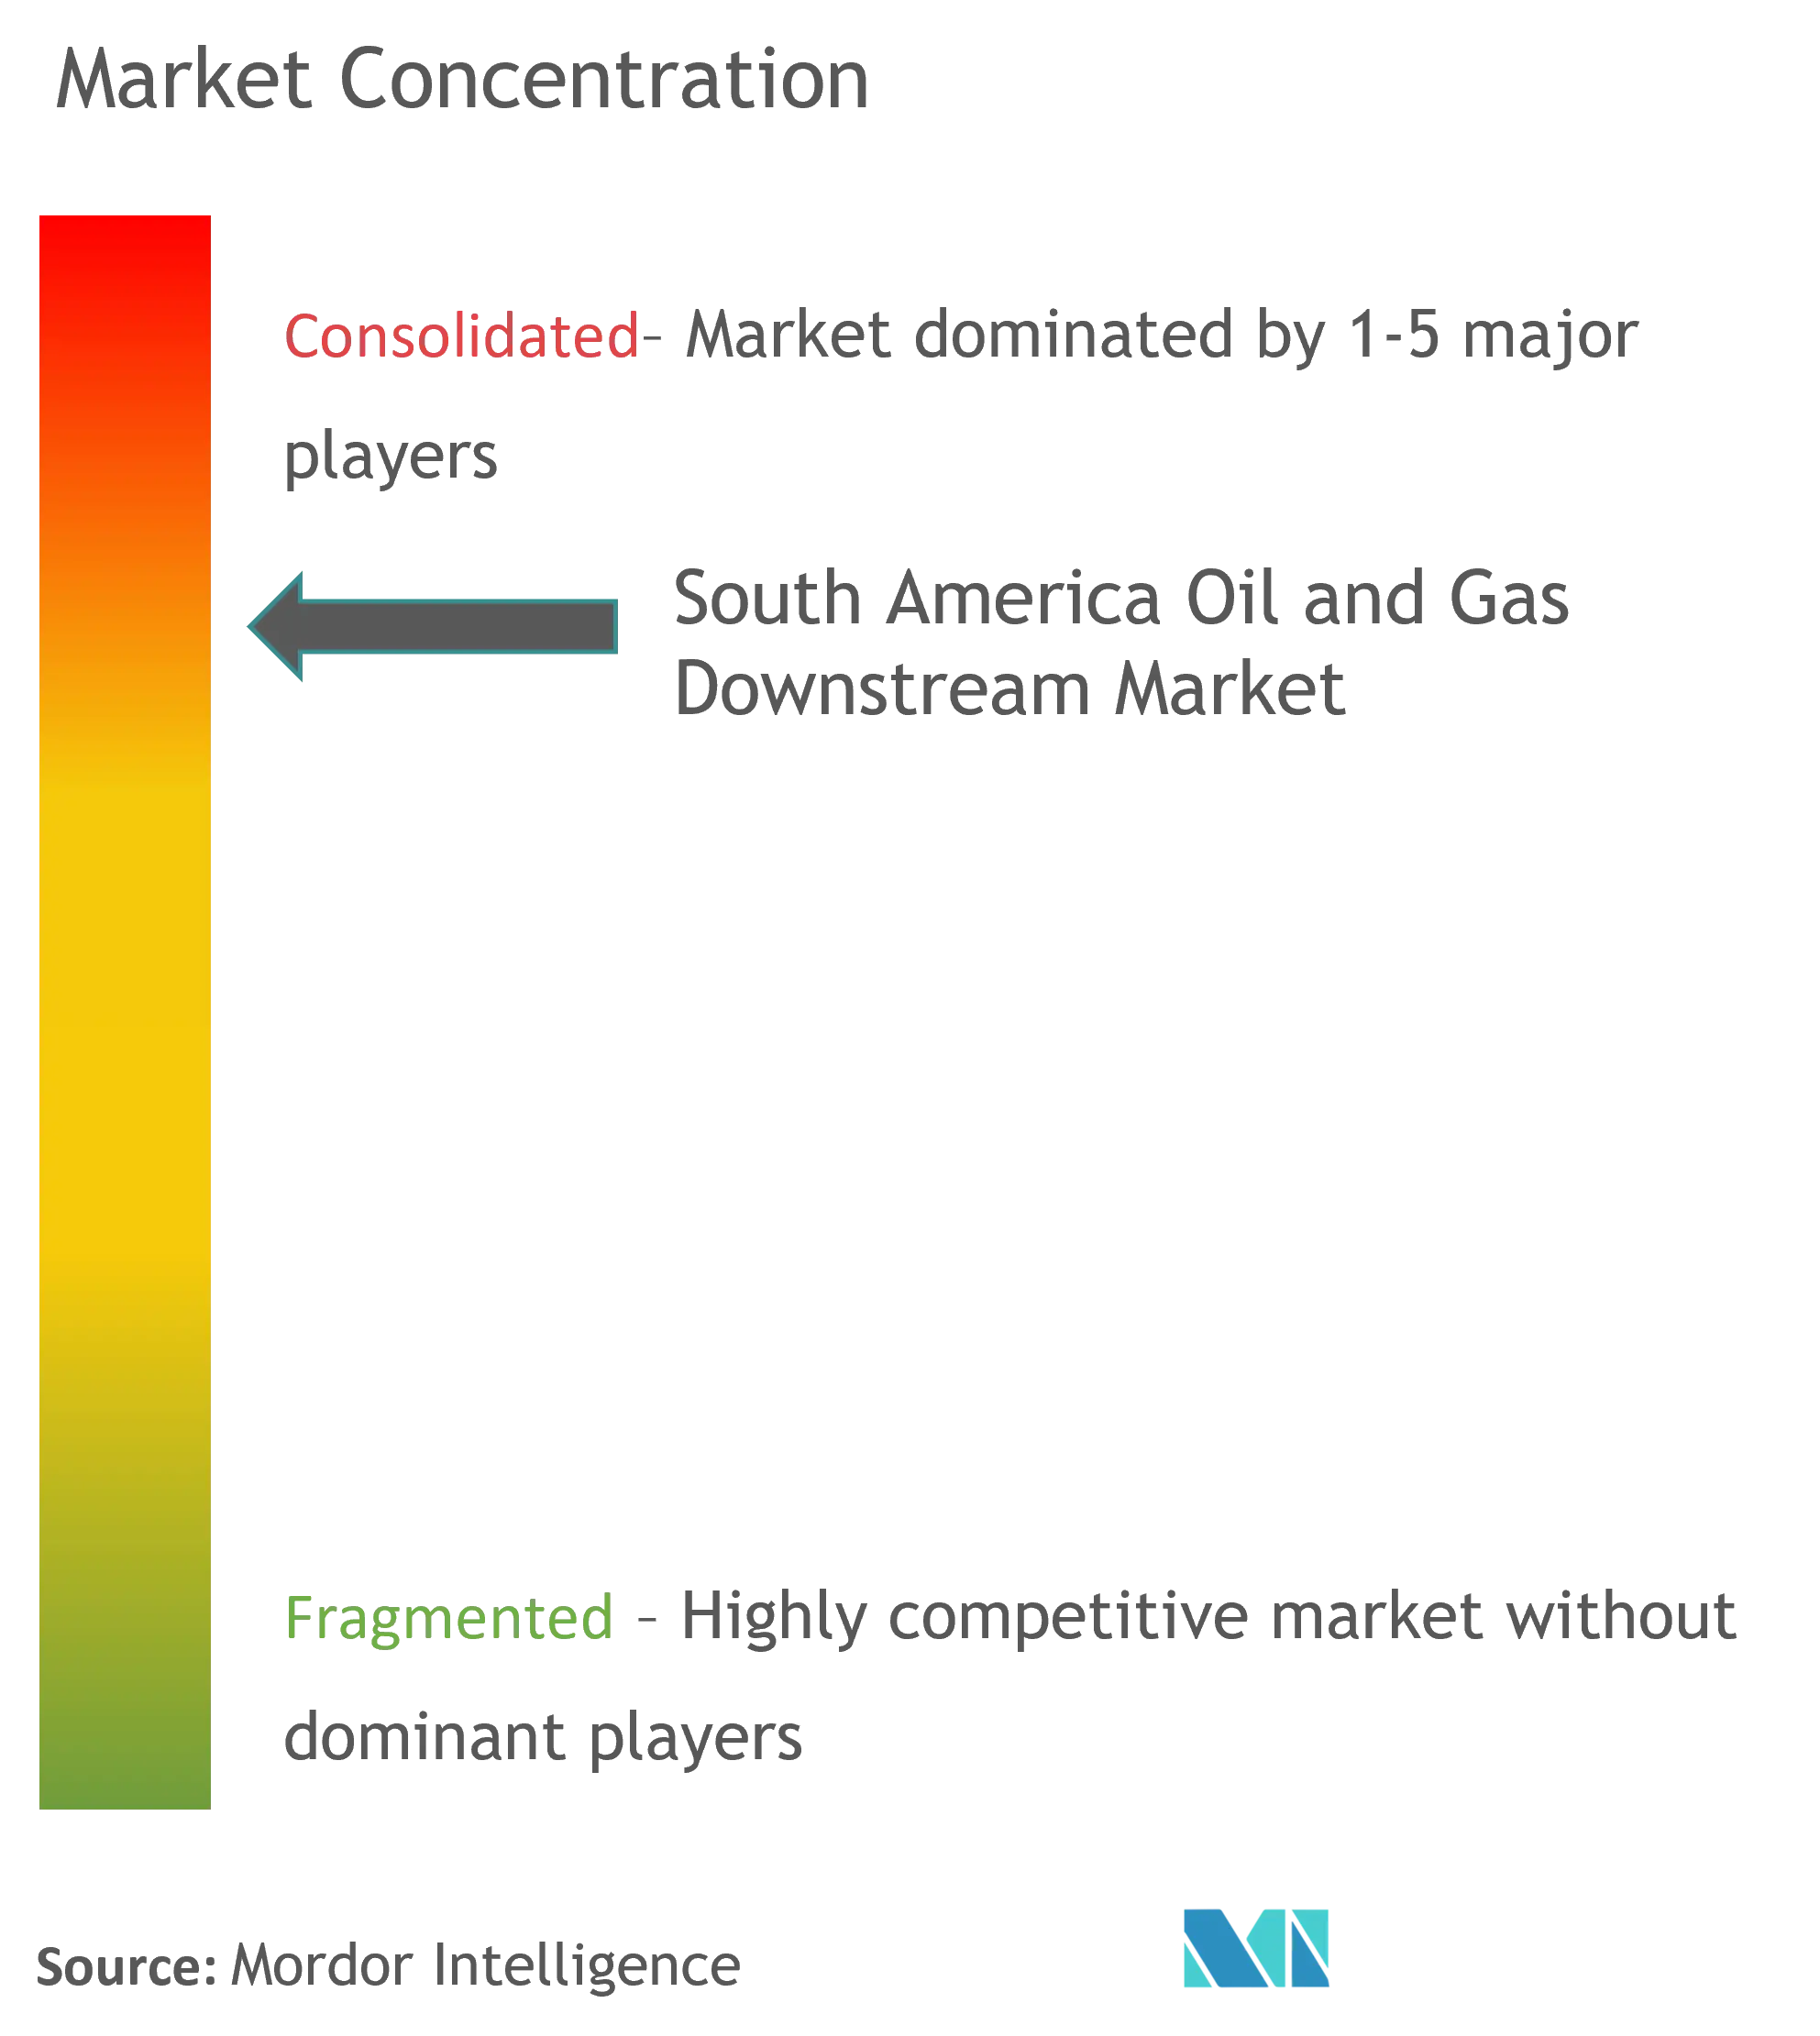 市場集中 - 南米の石油・ガス下流市場.png